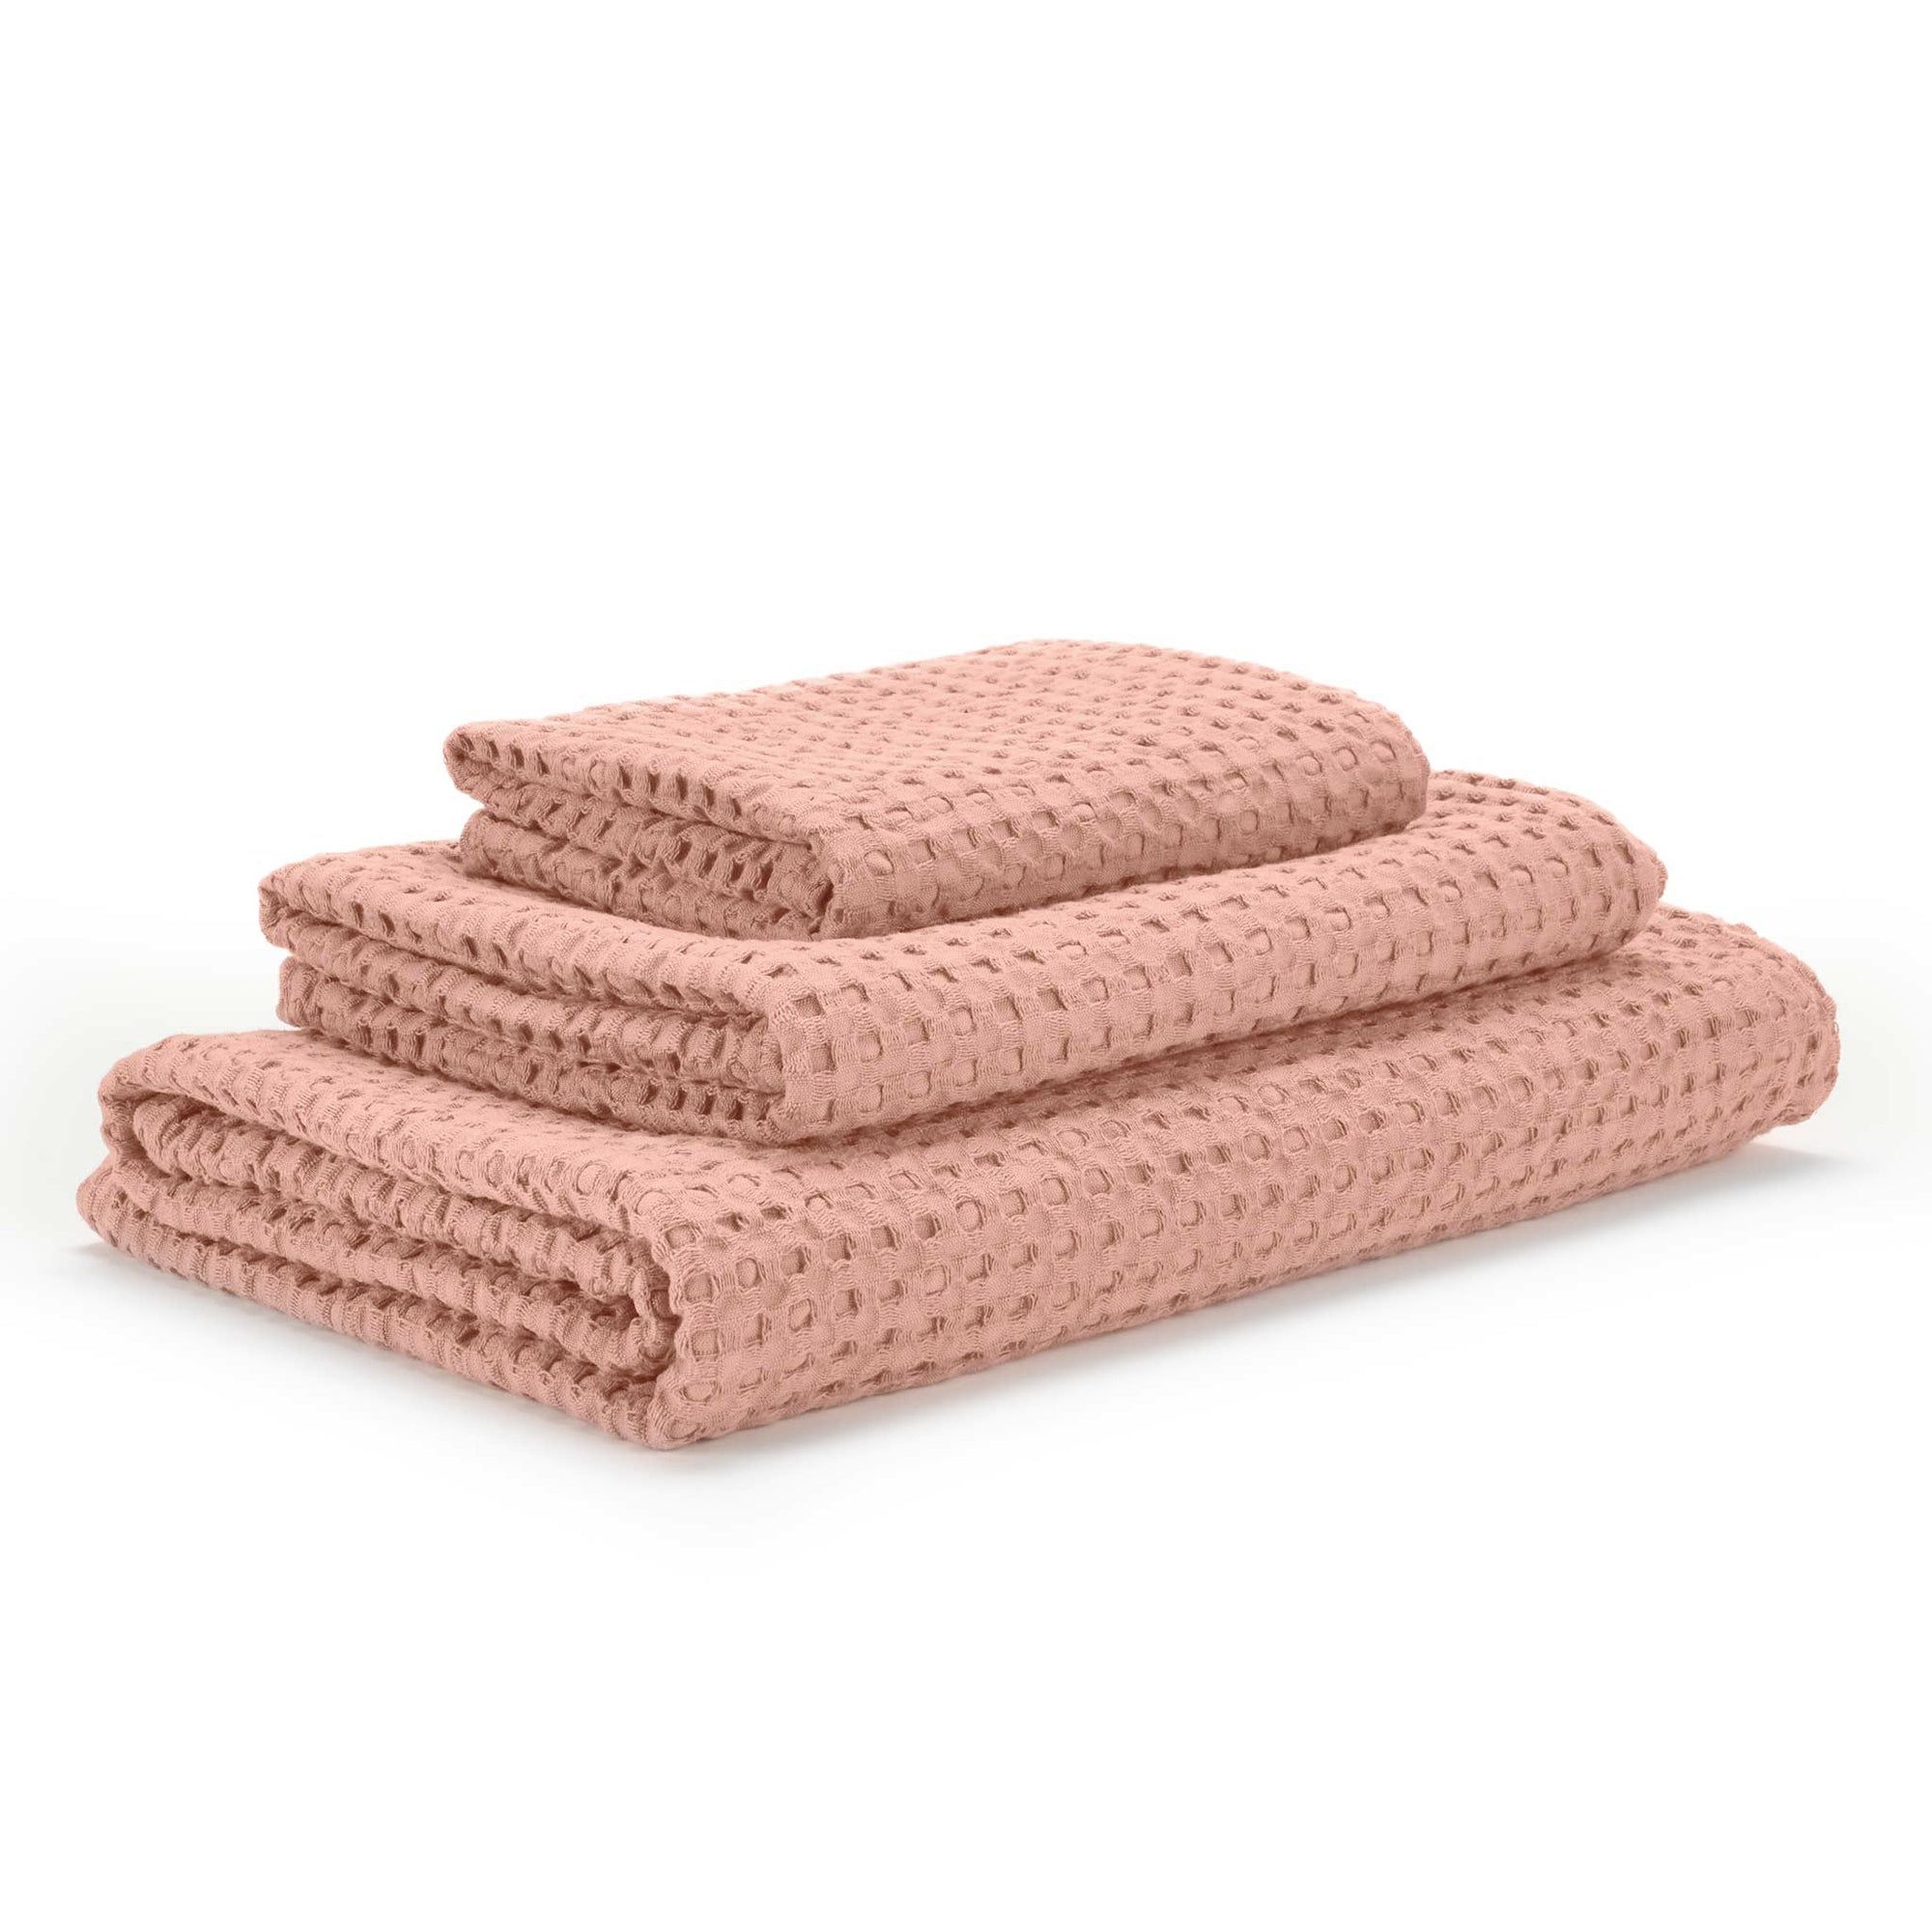 Abyss & Habidecor Pousada růžové retro ručníky ze 100% egyptské bavlny Abyss Habidecor | 625 Blush, Velikost 65x110 cm